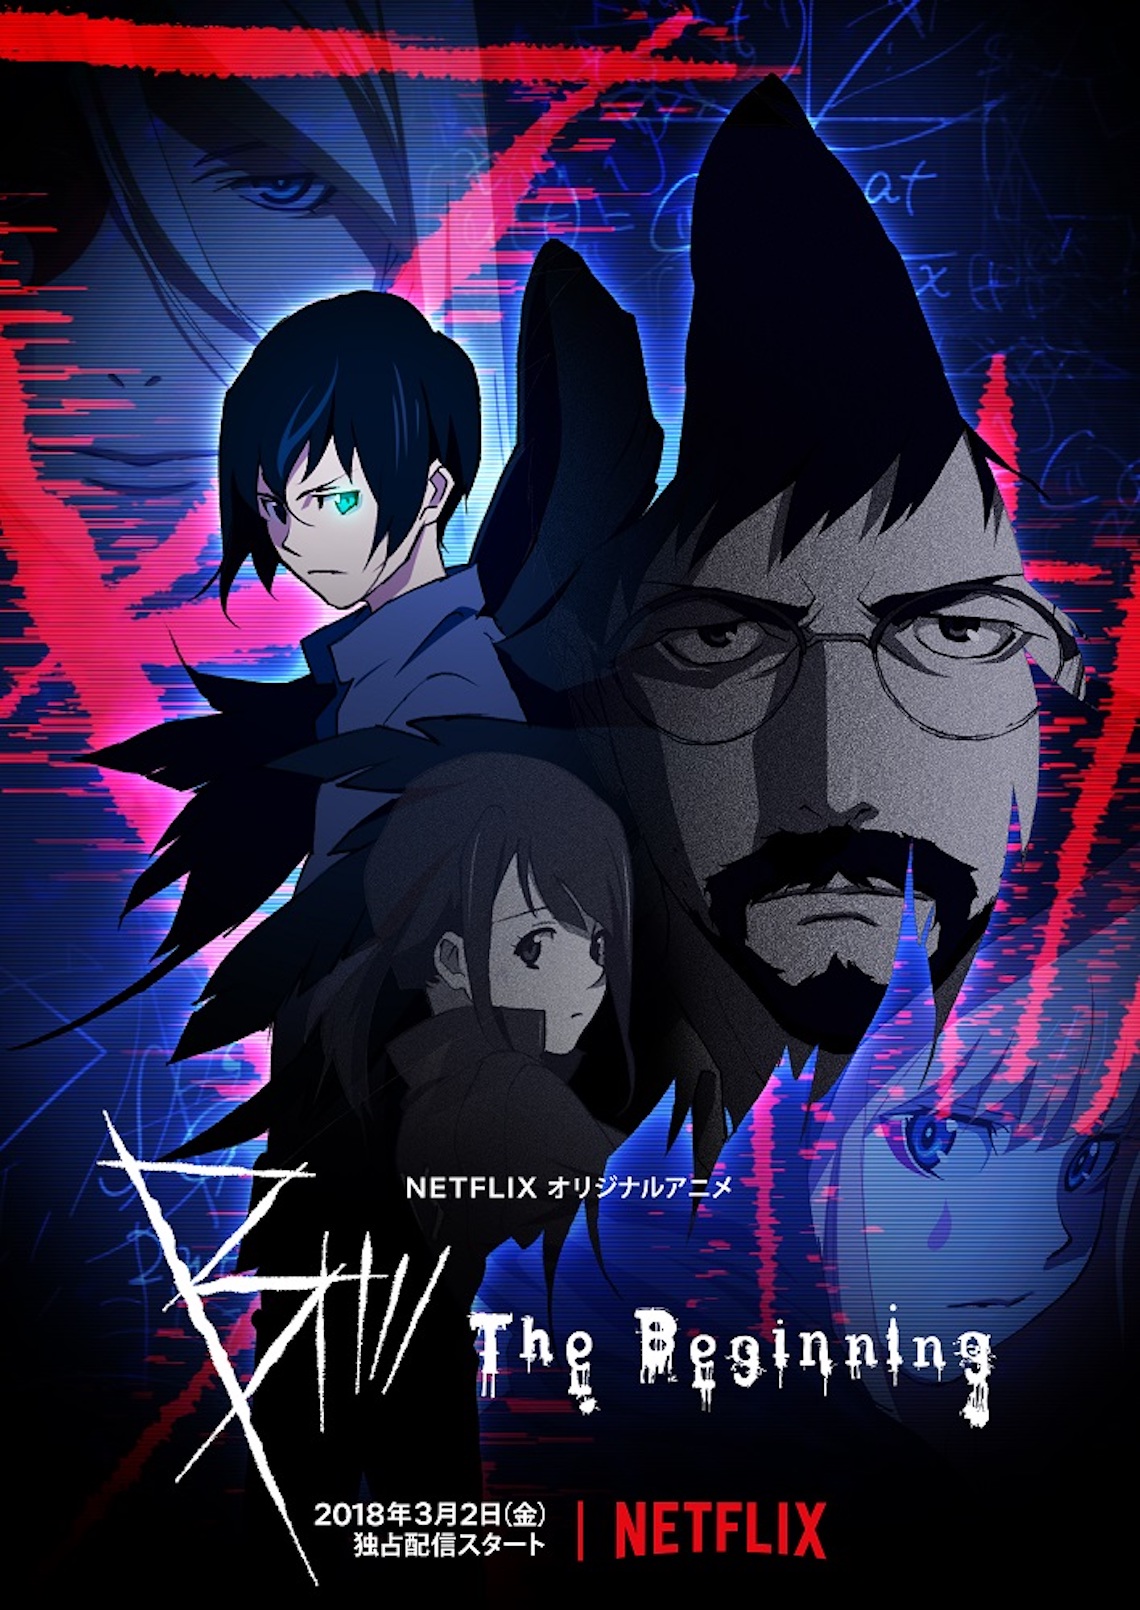 中澤一登 Production I Gによるnetflixアニメ B The Beginning 本予告 キーアートを同時解禁 Qetic